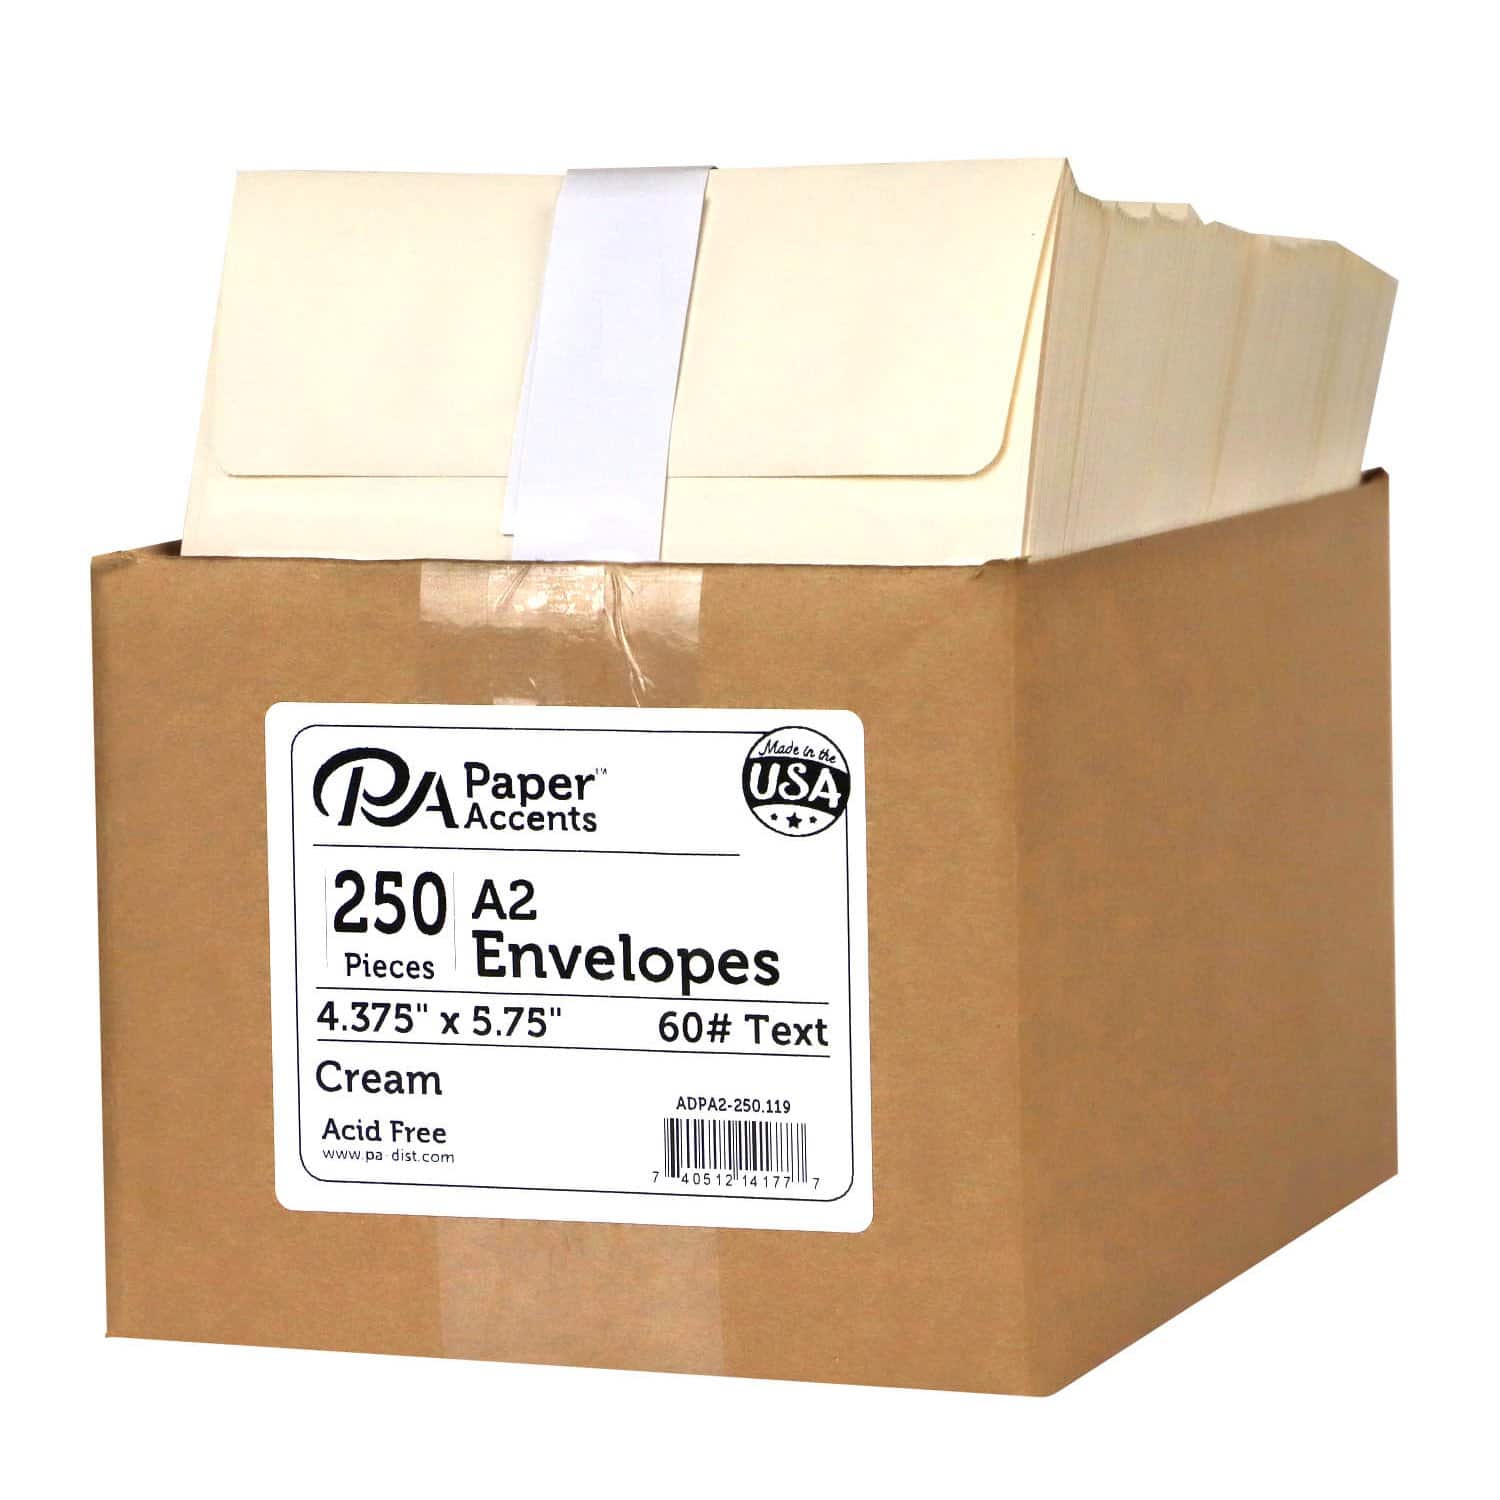 PA Paper™ Accents Super Value Pack Envelopes, 4.38" x 5.75"